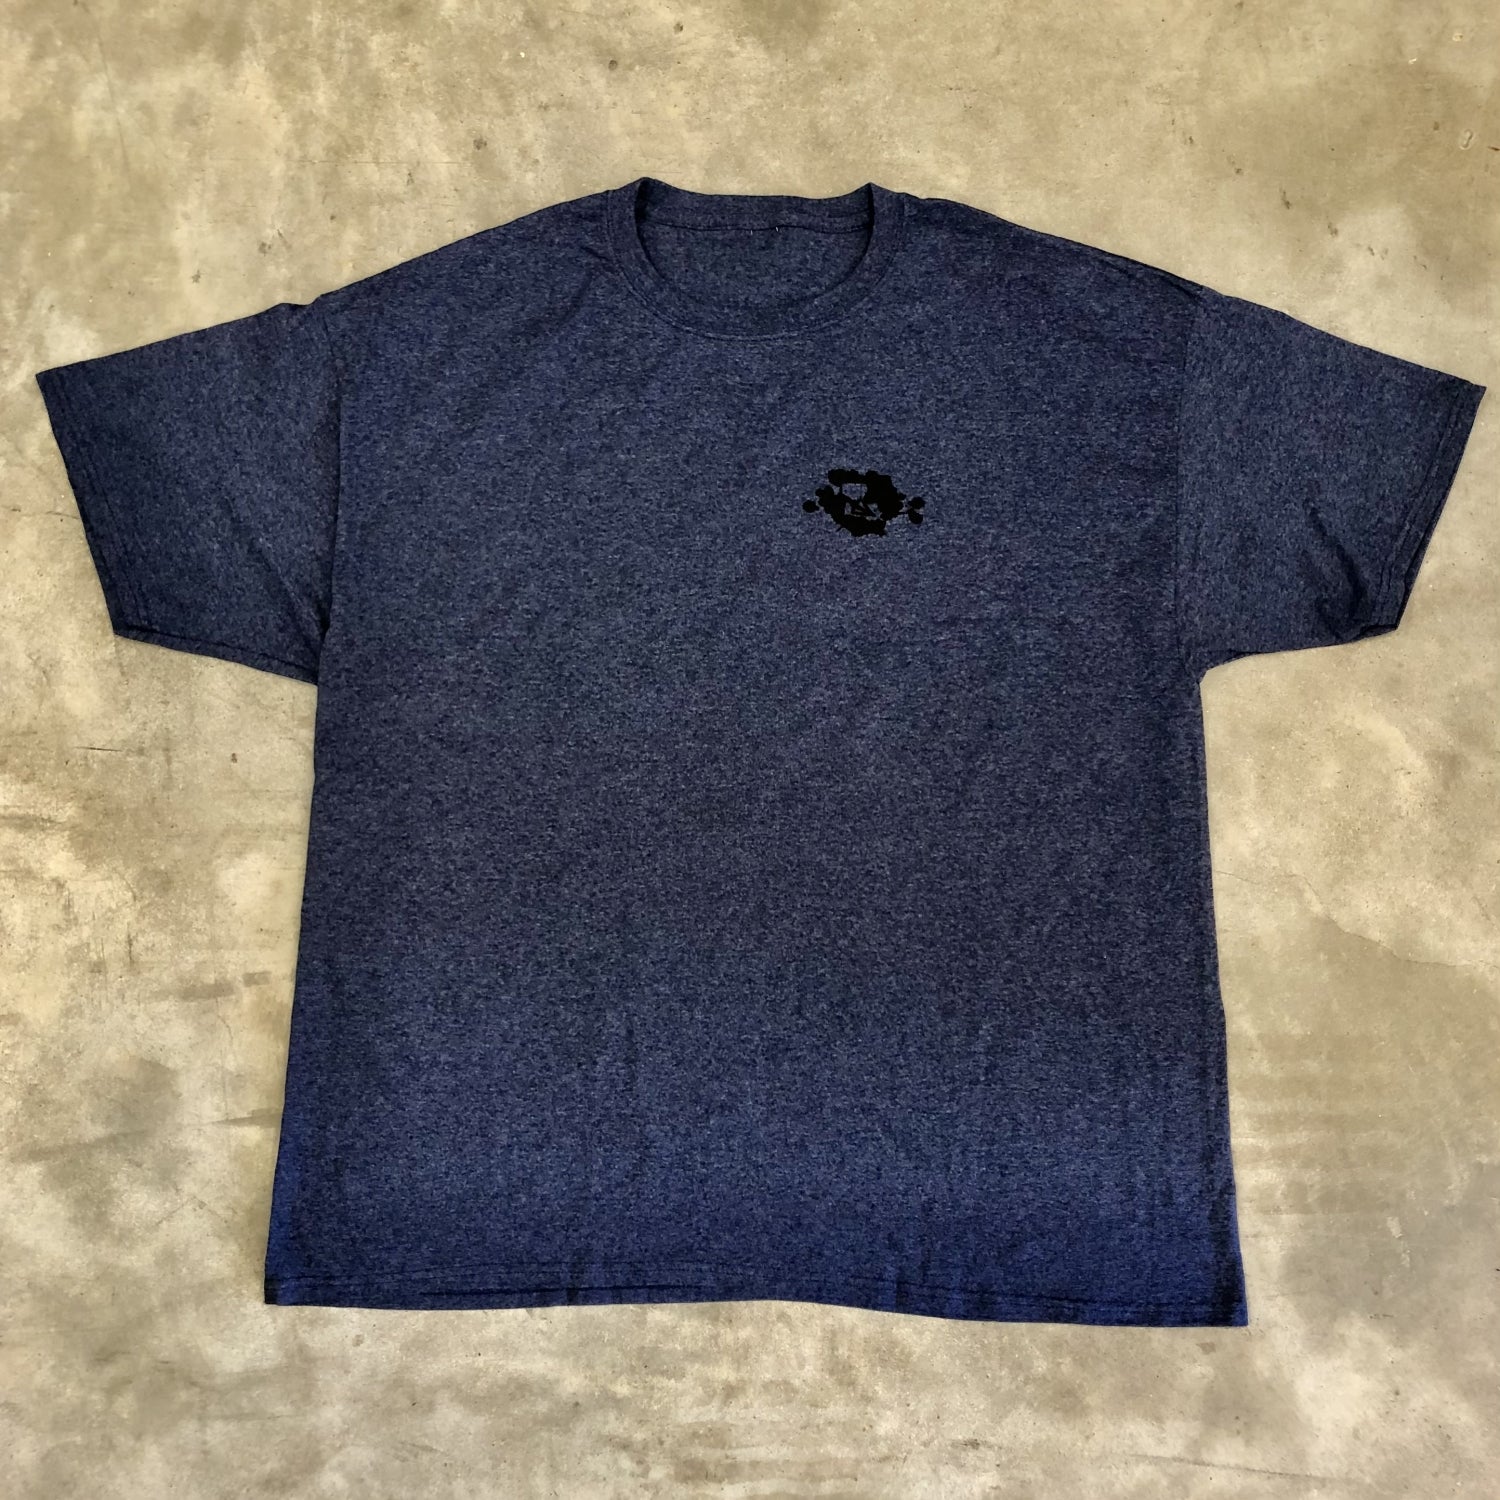 Thistlethwaite LABH Shirt - 3XL